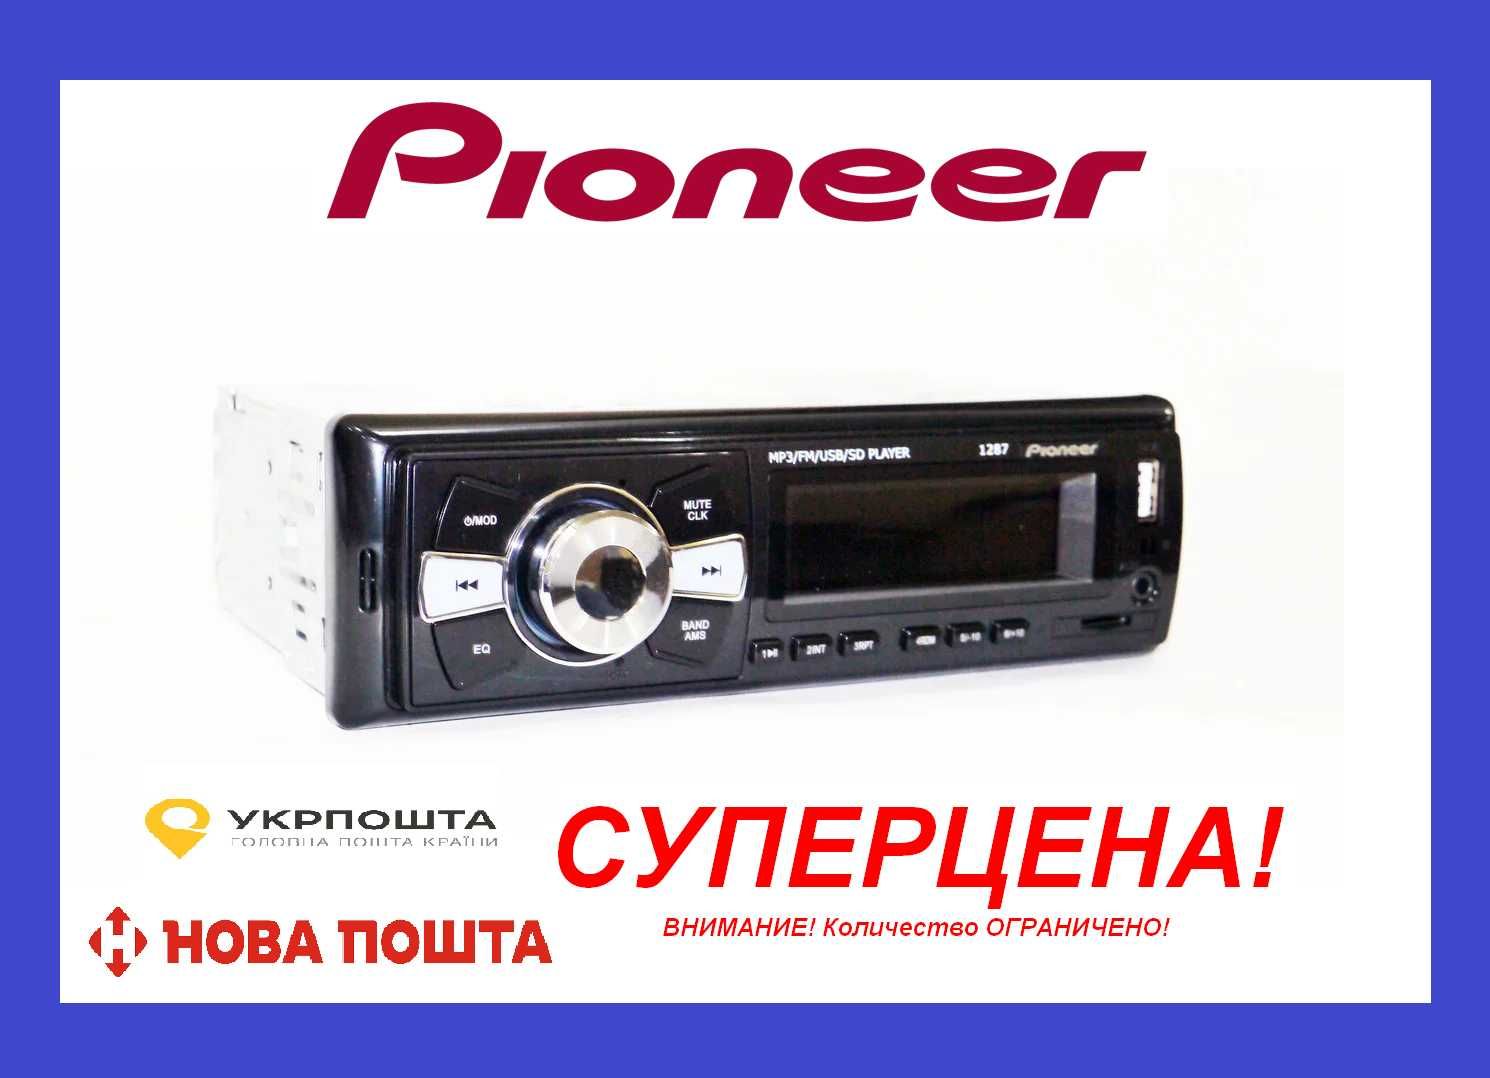 Автомагнитола Pioneer 1287 ISO - MP3,FM,USB,microSD-карта